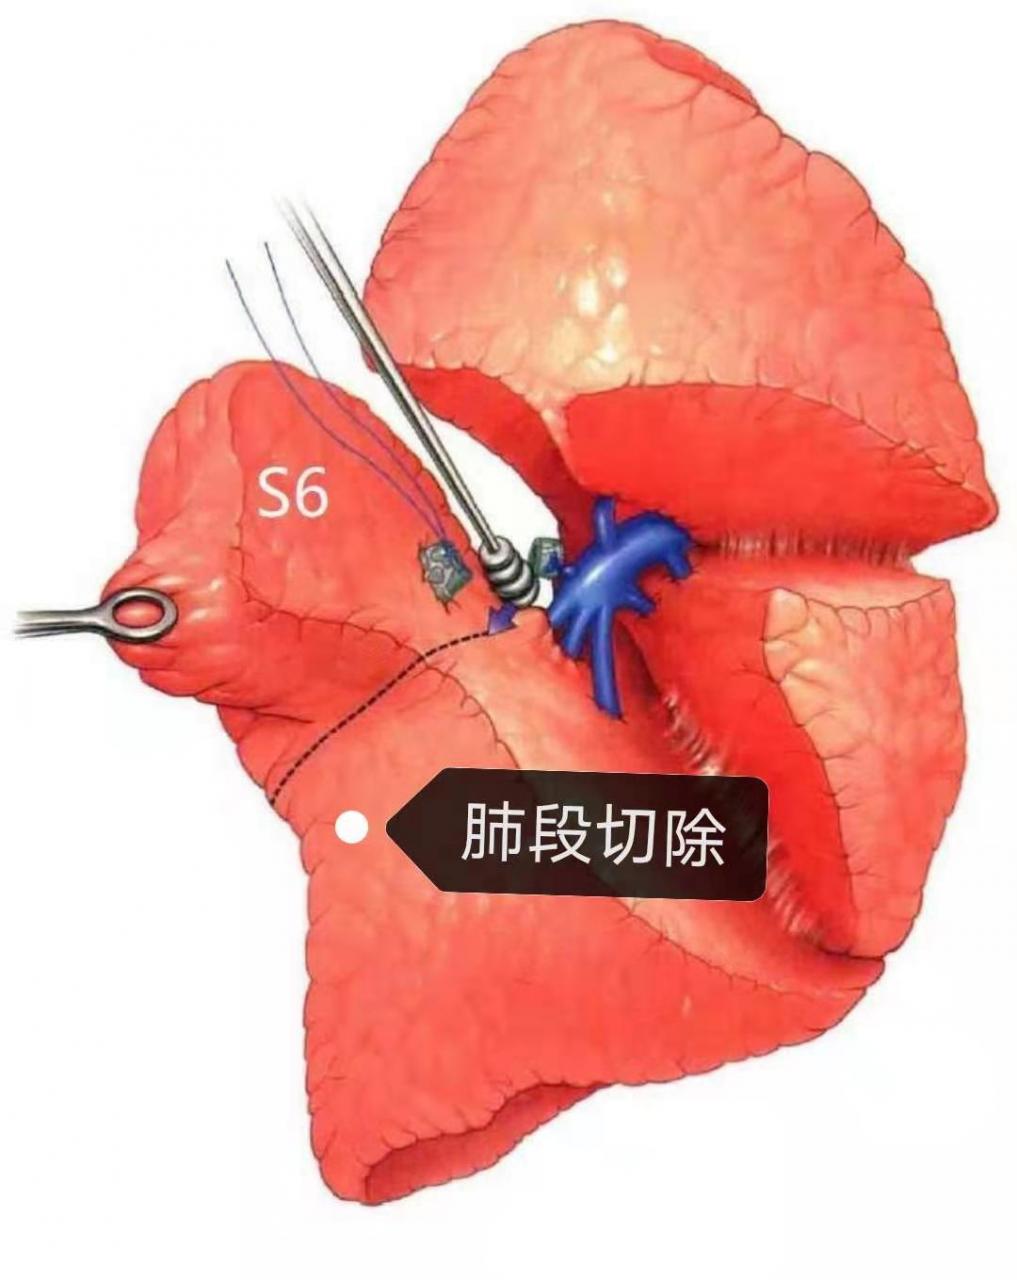 肺部常见手术方式——楔形切除,肺段切除,肺叶切除